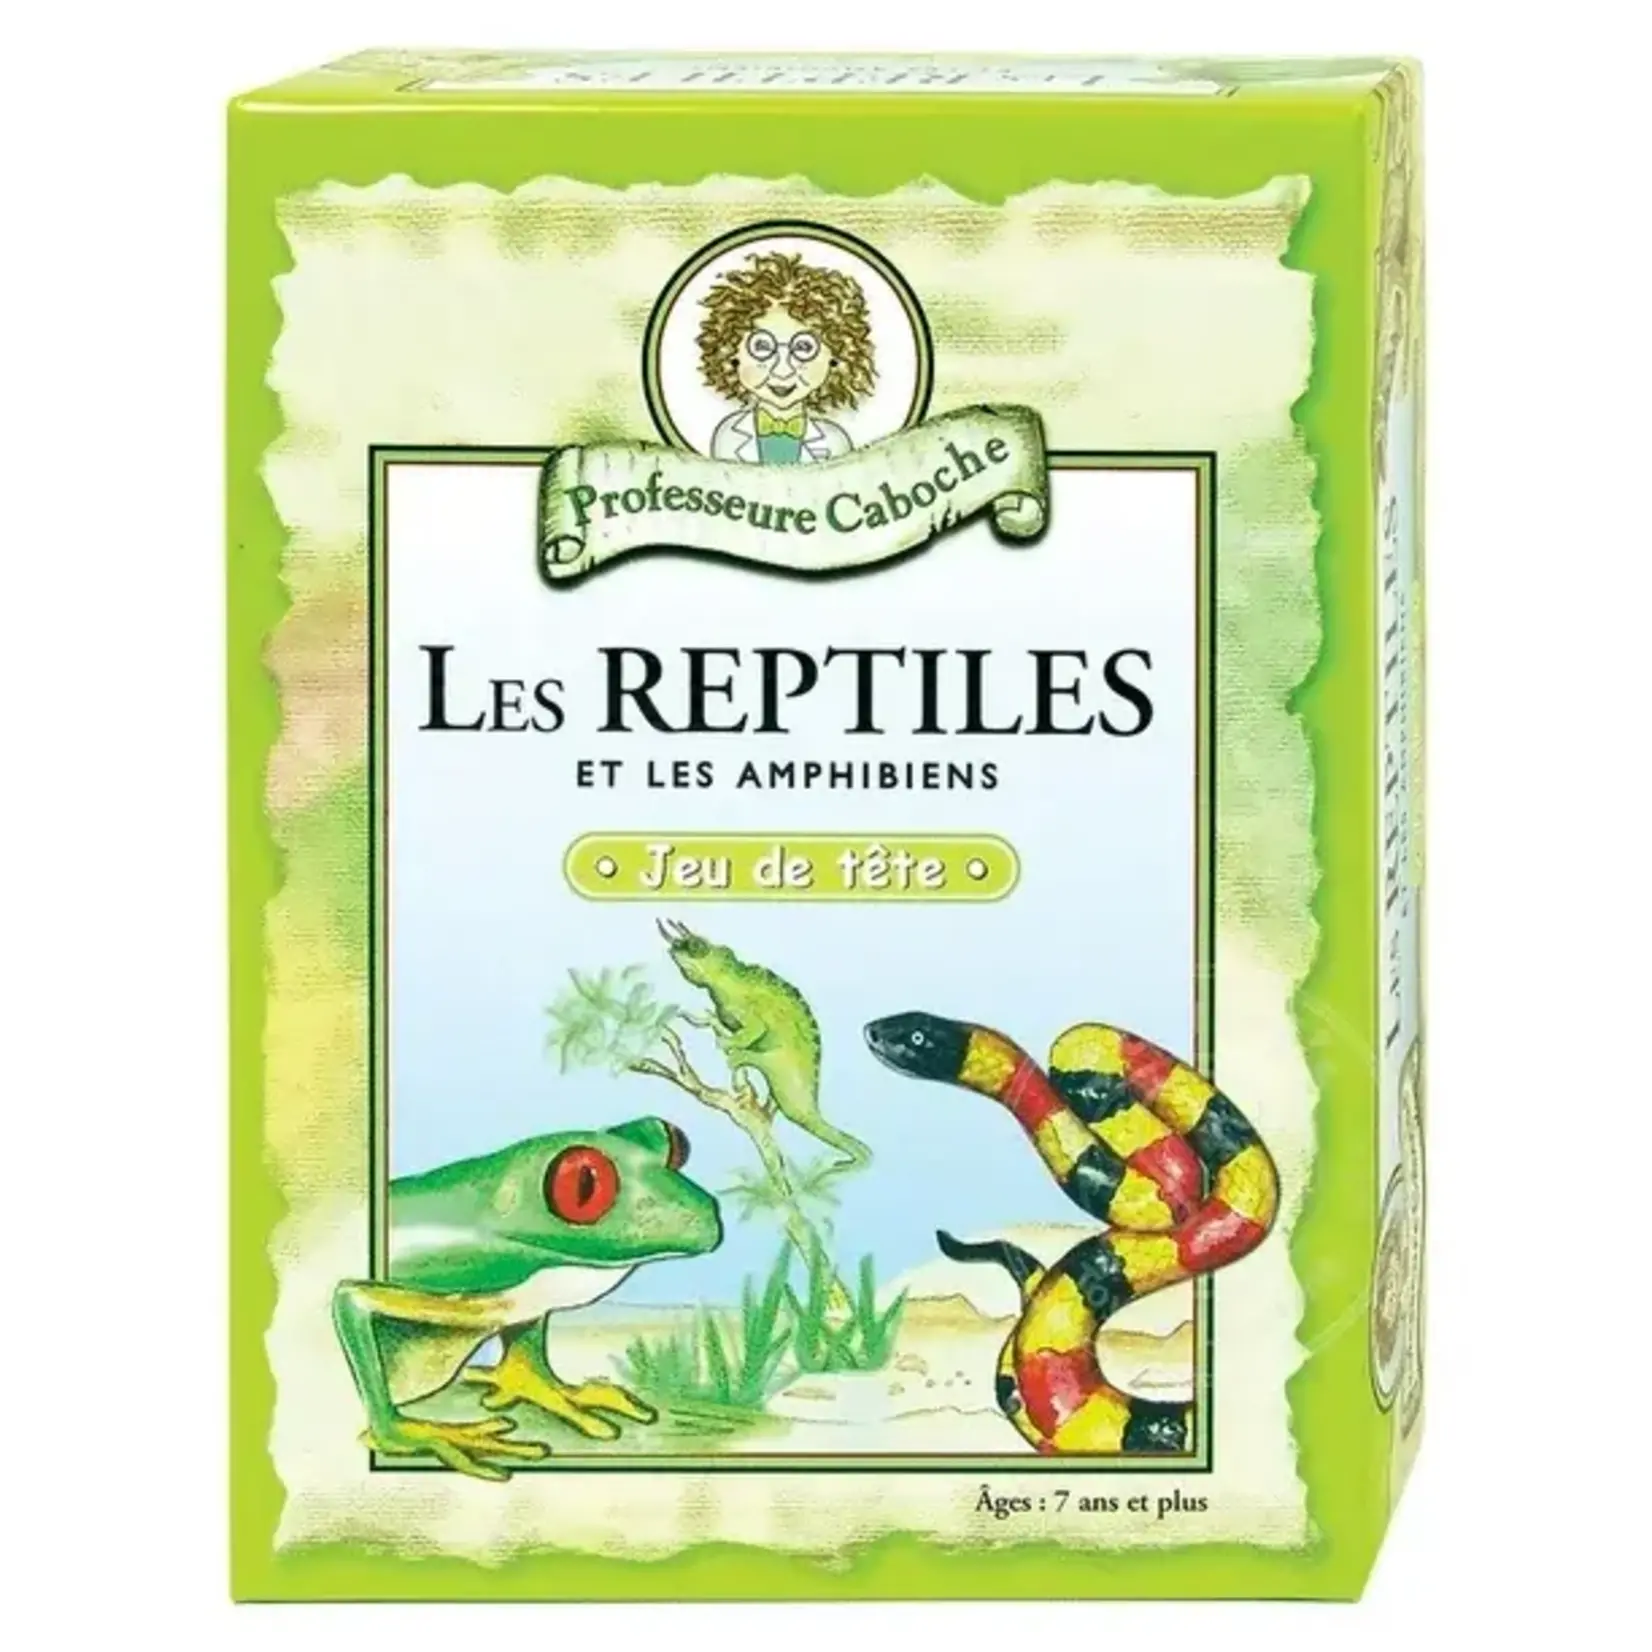 Professeure Caboche Professeure Caboche - Les reptiles et les amphibiens